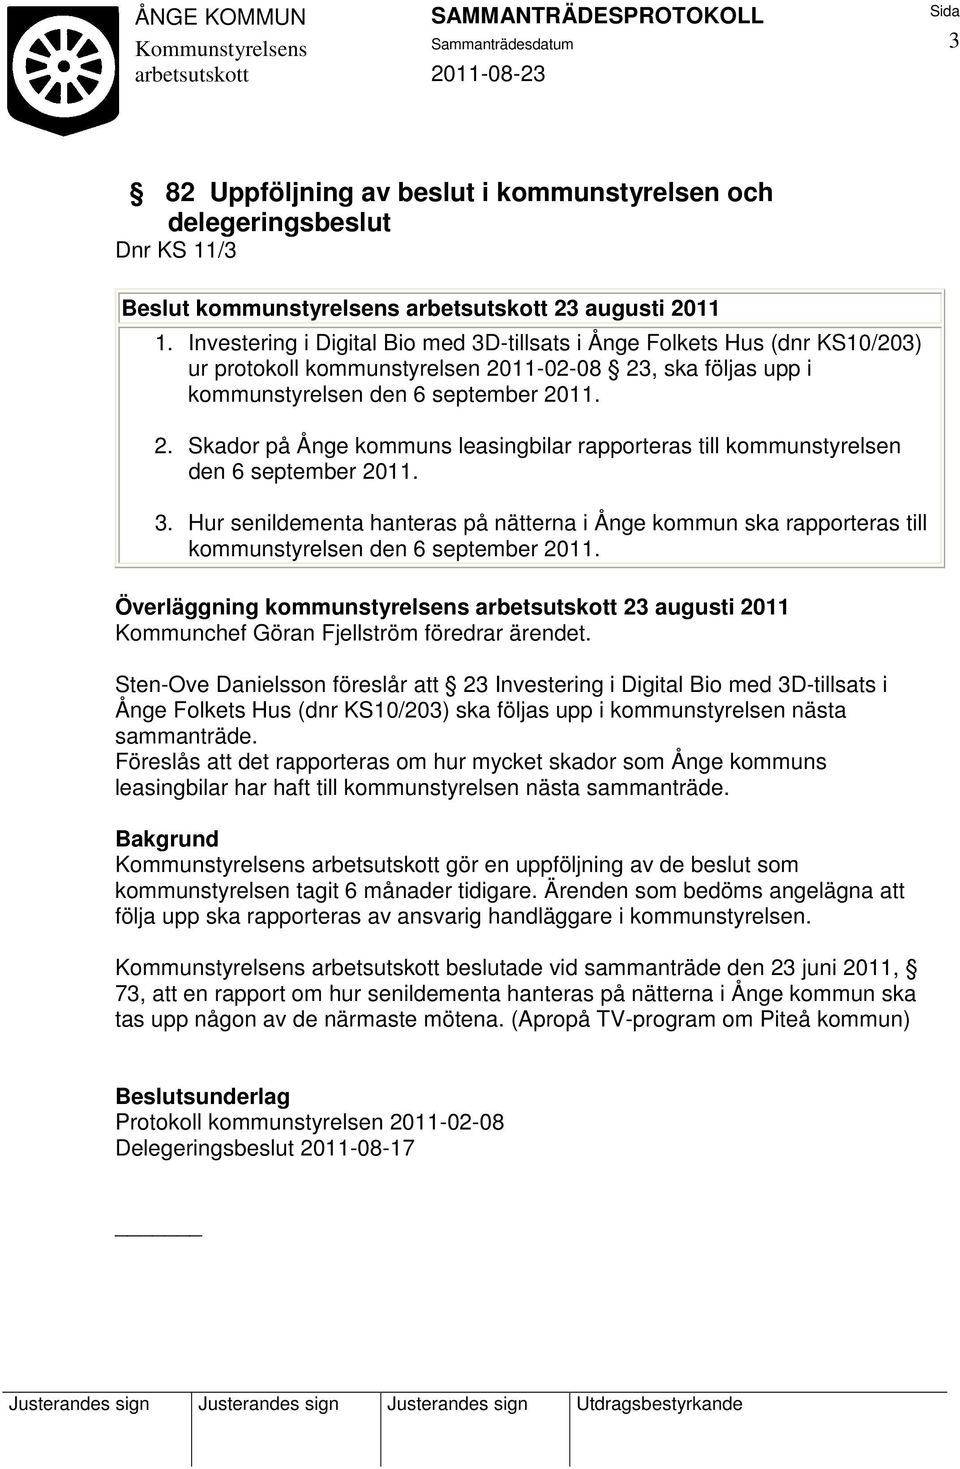 3. Hur senildementa hanteras på nätterna i Ånge kommun ska rapporteras till kommunstyrelsen den 6 september 2011.